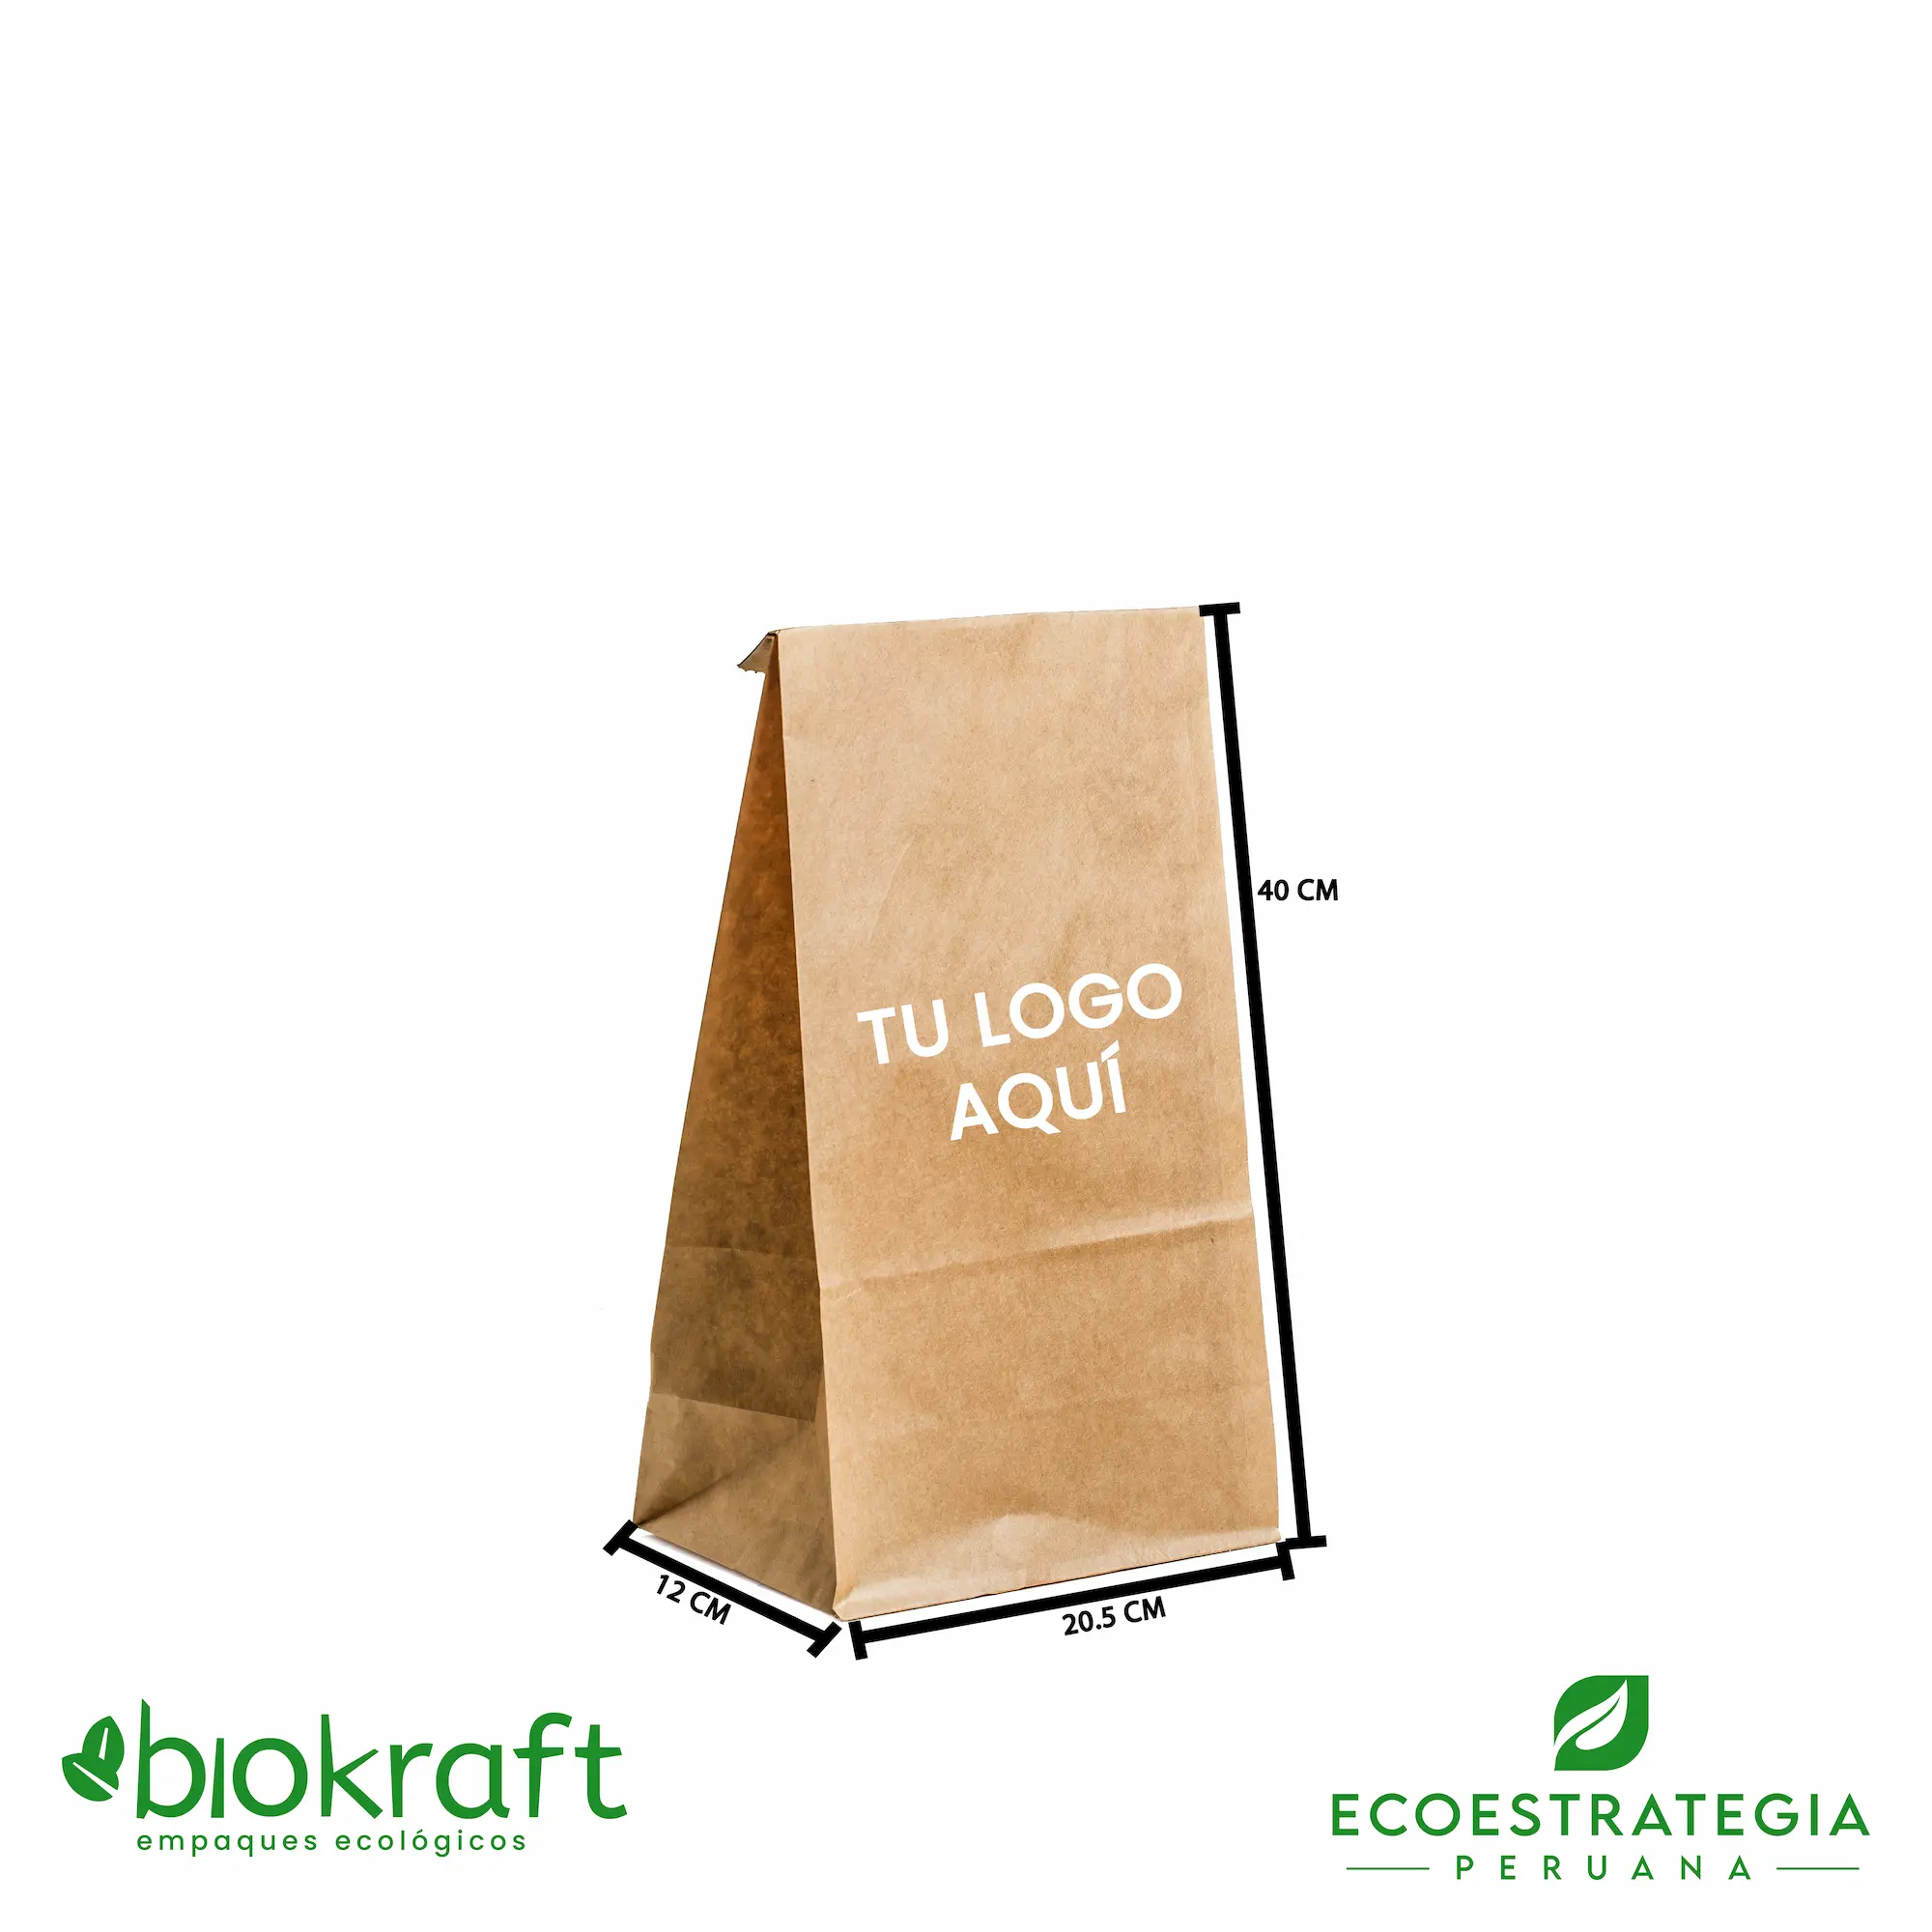 Esta bolsa de papel Kraft tiene un grosor de 70 gr y un peso de 22gr. Bolsa biodegradable de excelente gramaje y medida, ideal para comidas y productos ligeros. Cotiza ahora tus bolsas Kraft número 20